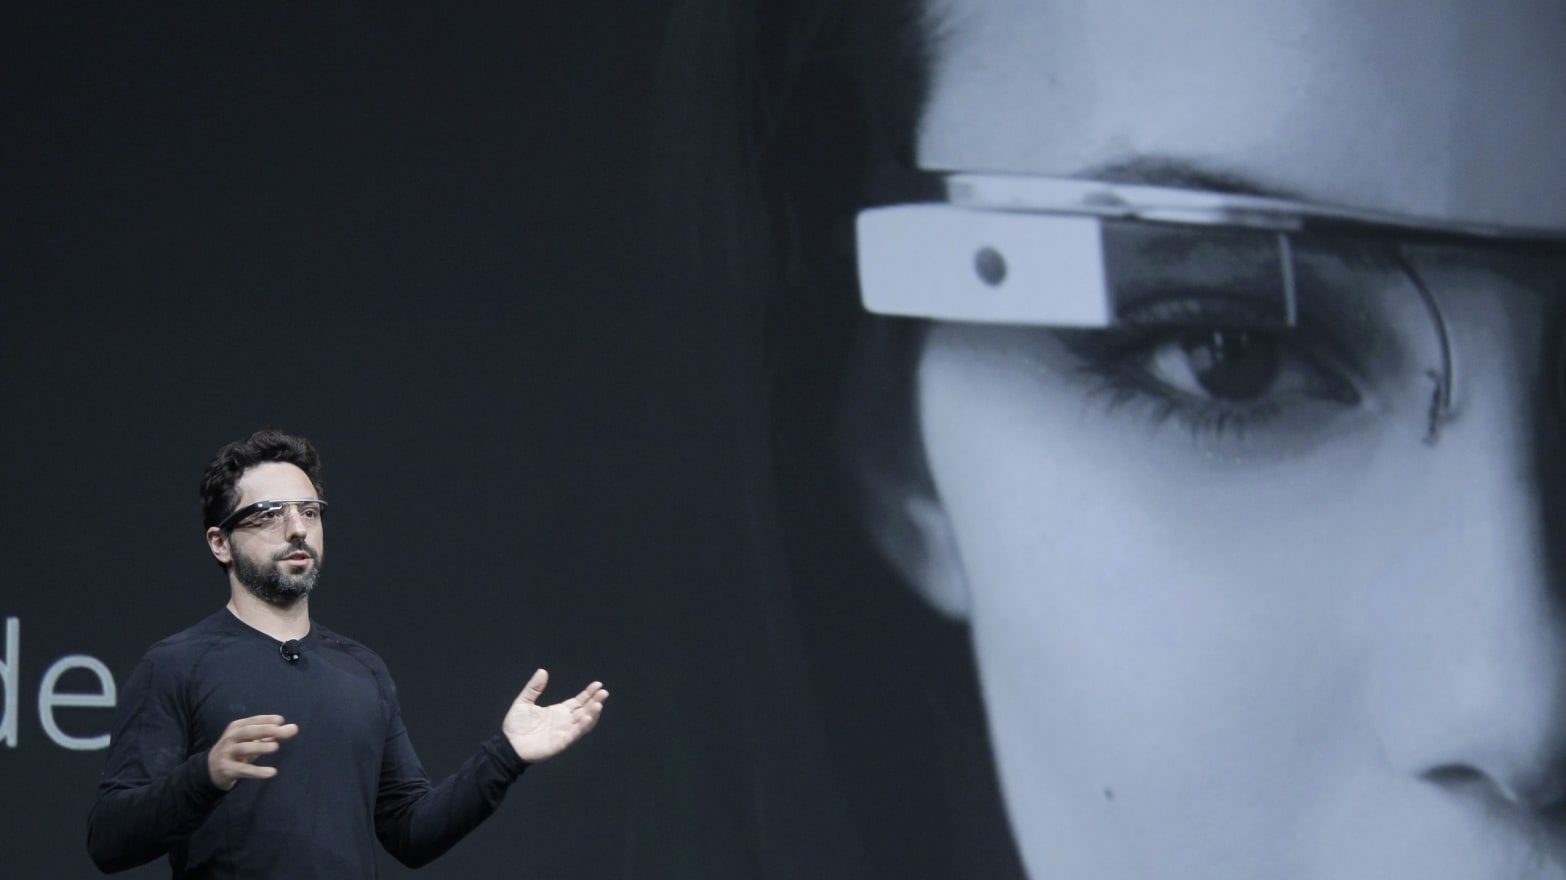 1566px x 880px - Google Glass Bans Porn Apps